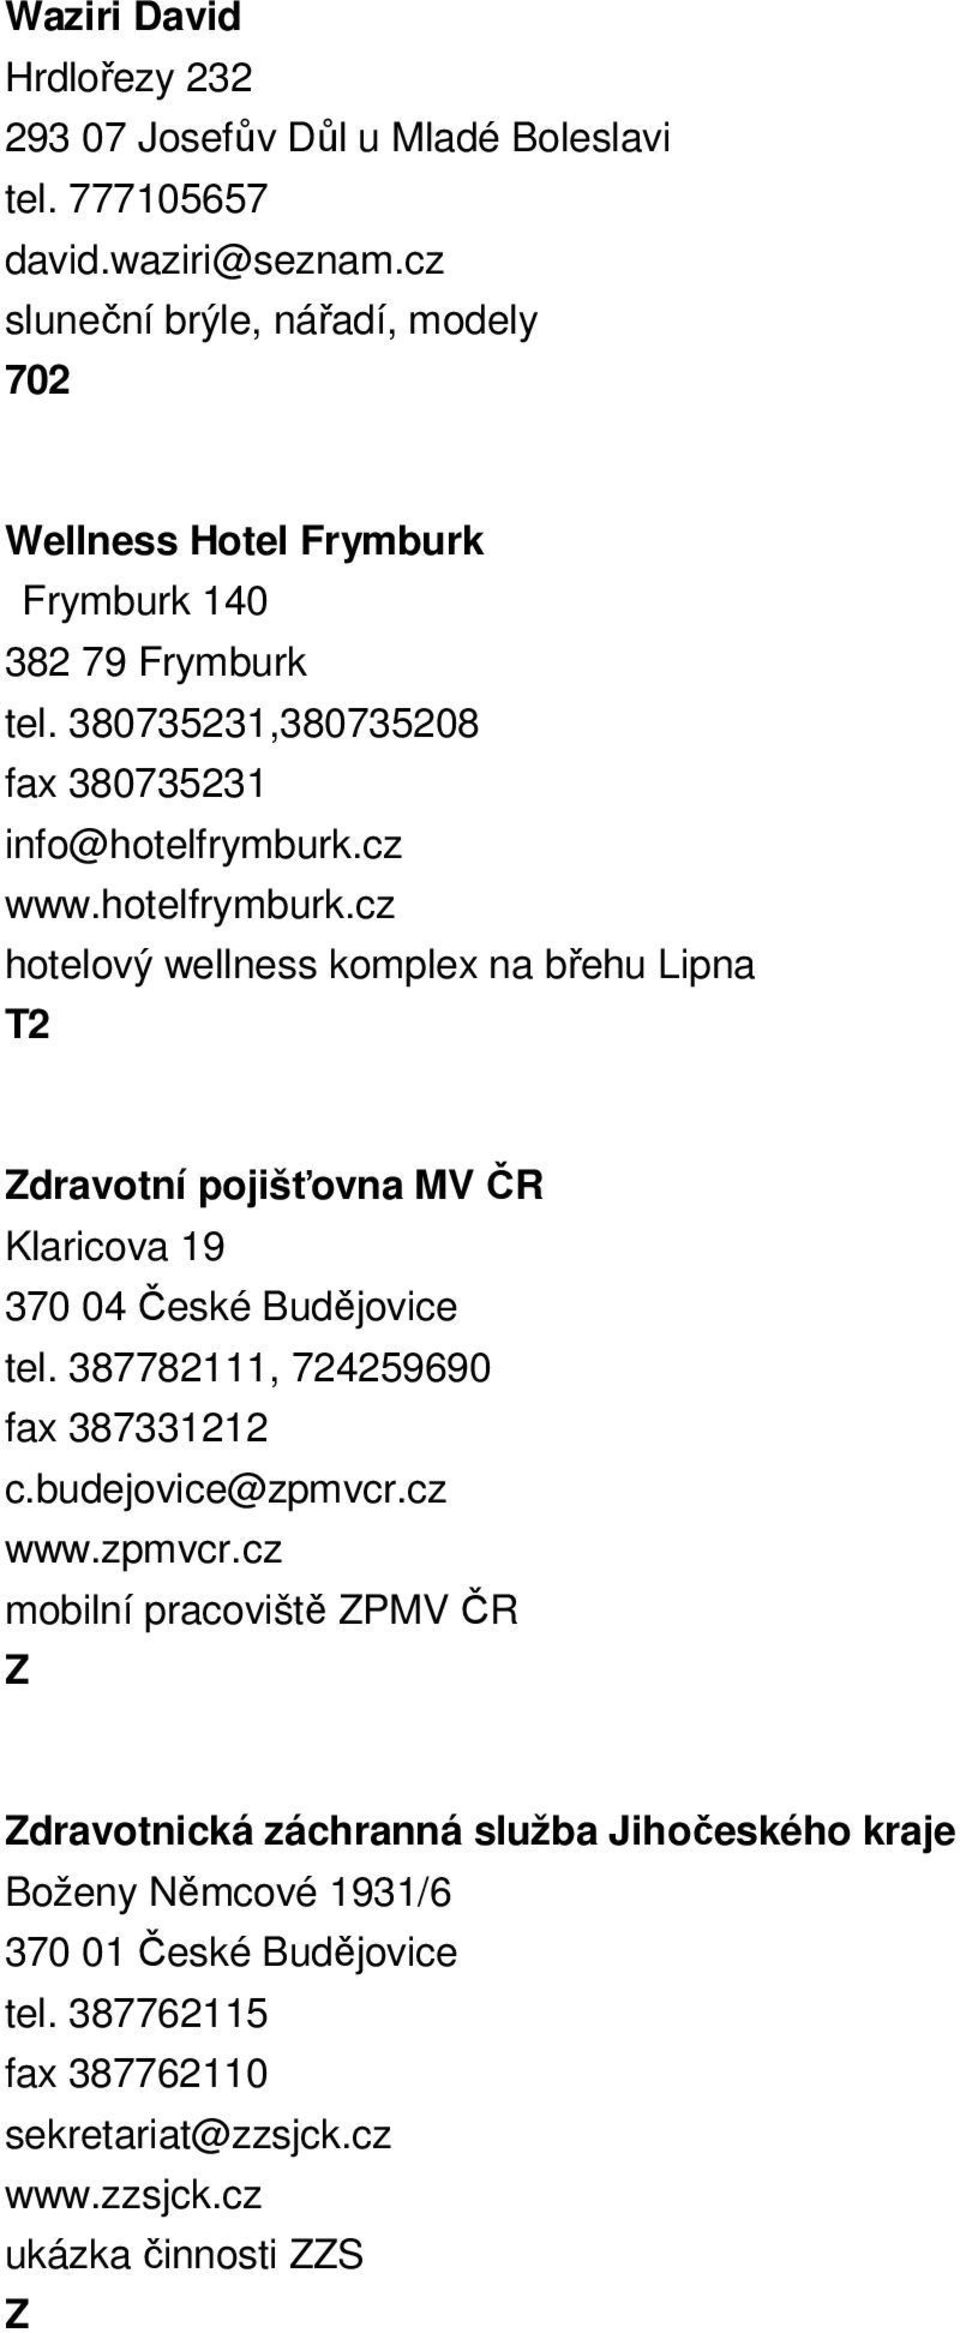 hotelfrymburk.cz hotelový wellness komplex na břehu Lipna dravotní pojišťovna MV ČR Klaricova 19 370 04 České Budějovice tel.